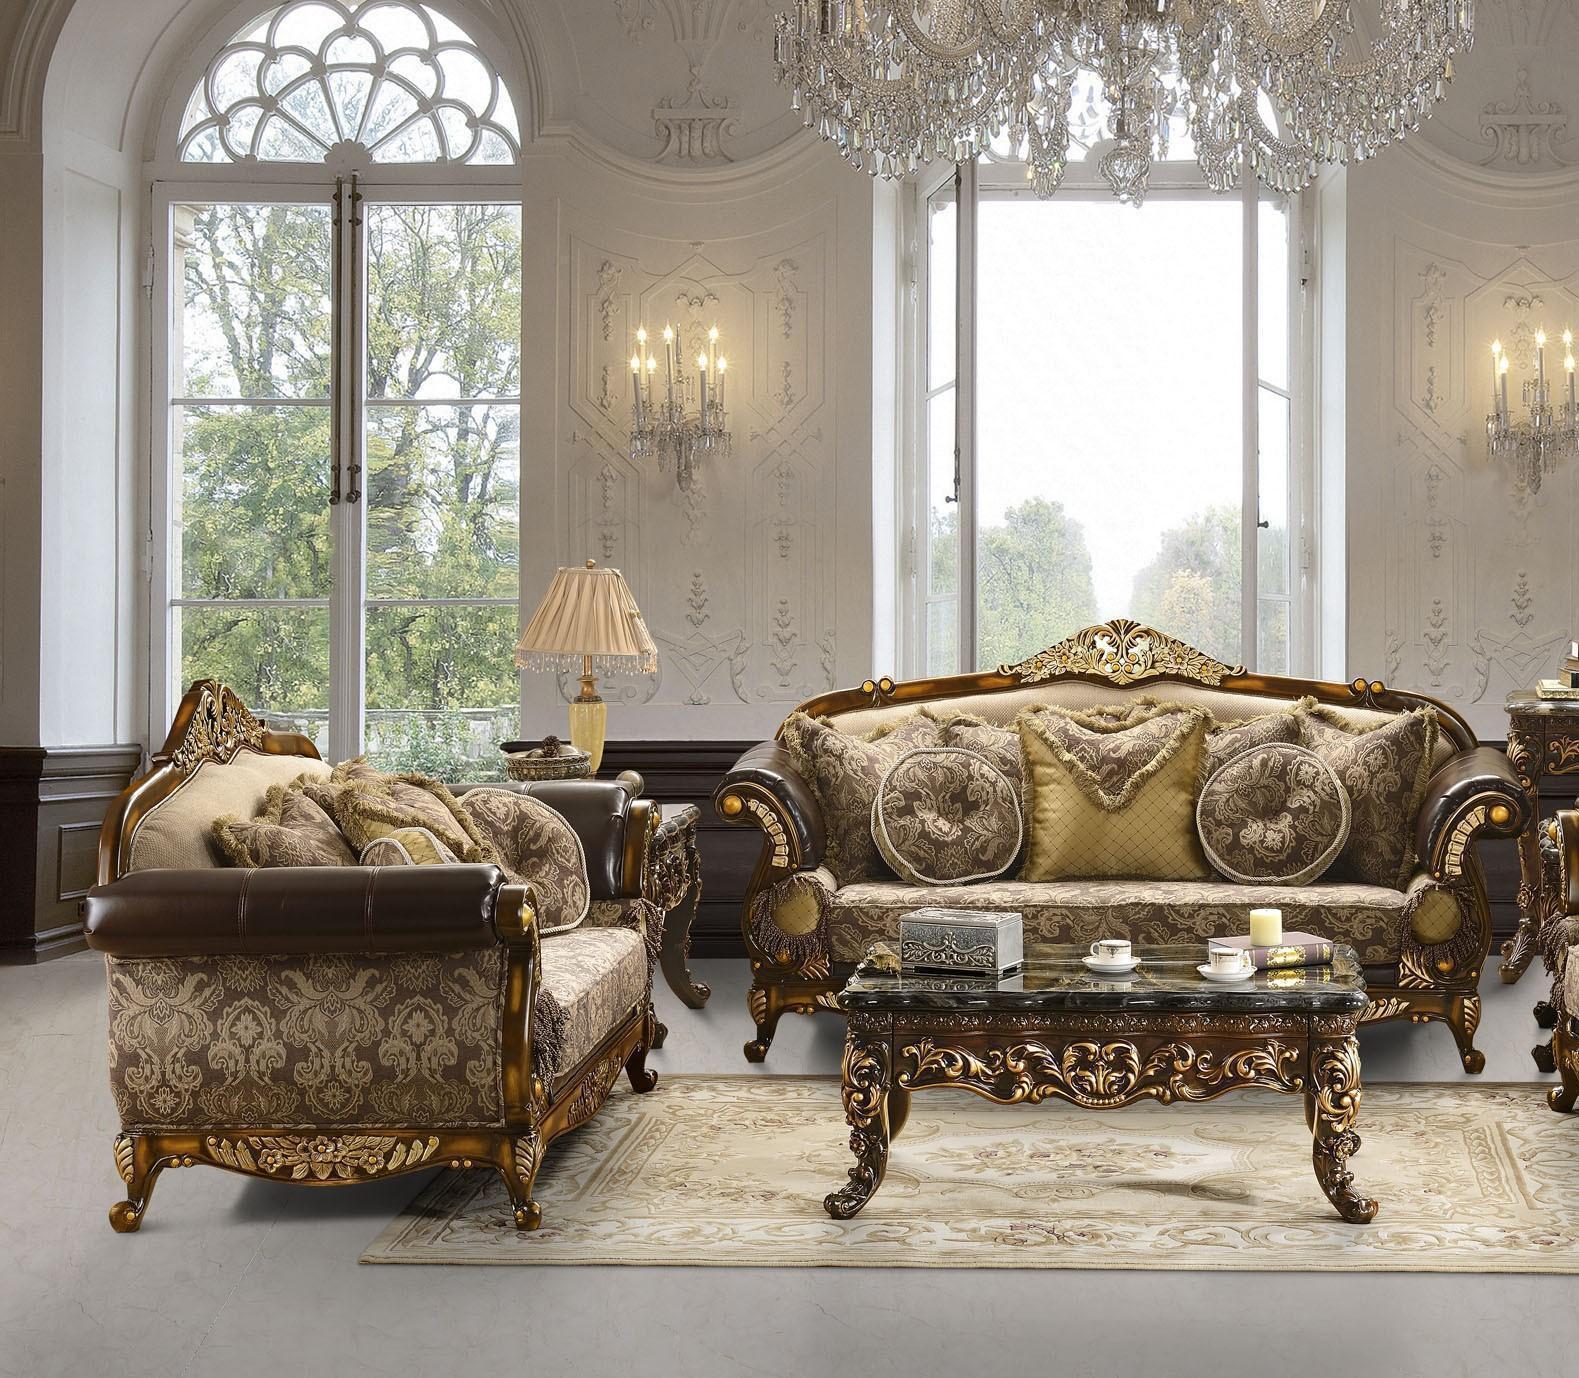 

    
Mahogany Brown & Metallic Antique Gold Sofa Set 3Pcs Homey Design HD-26
